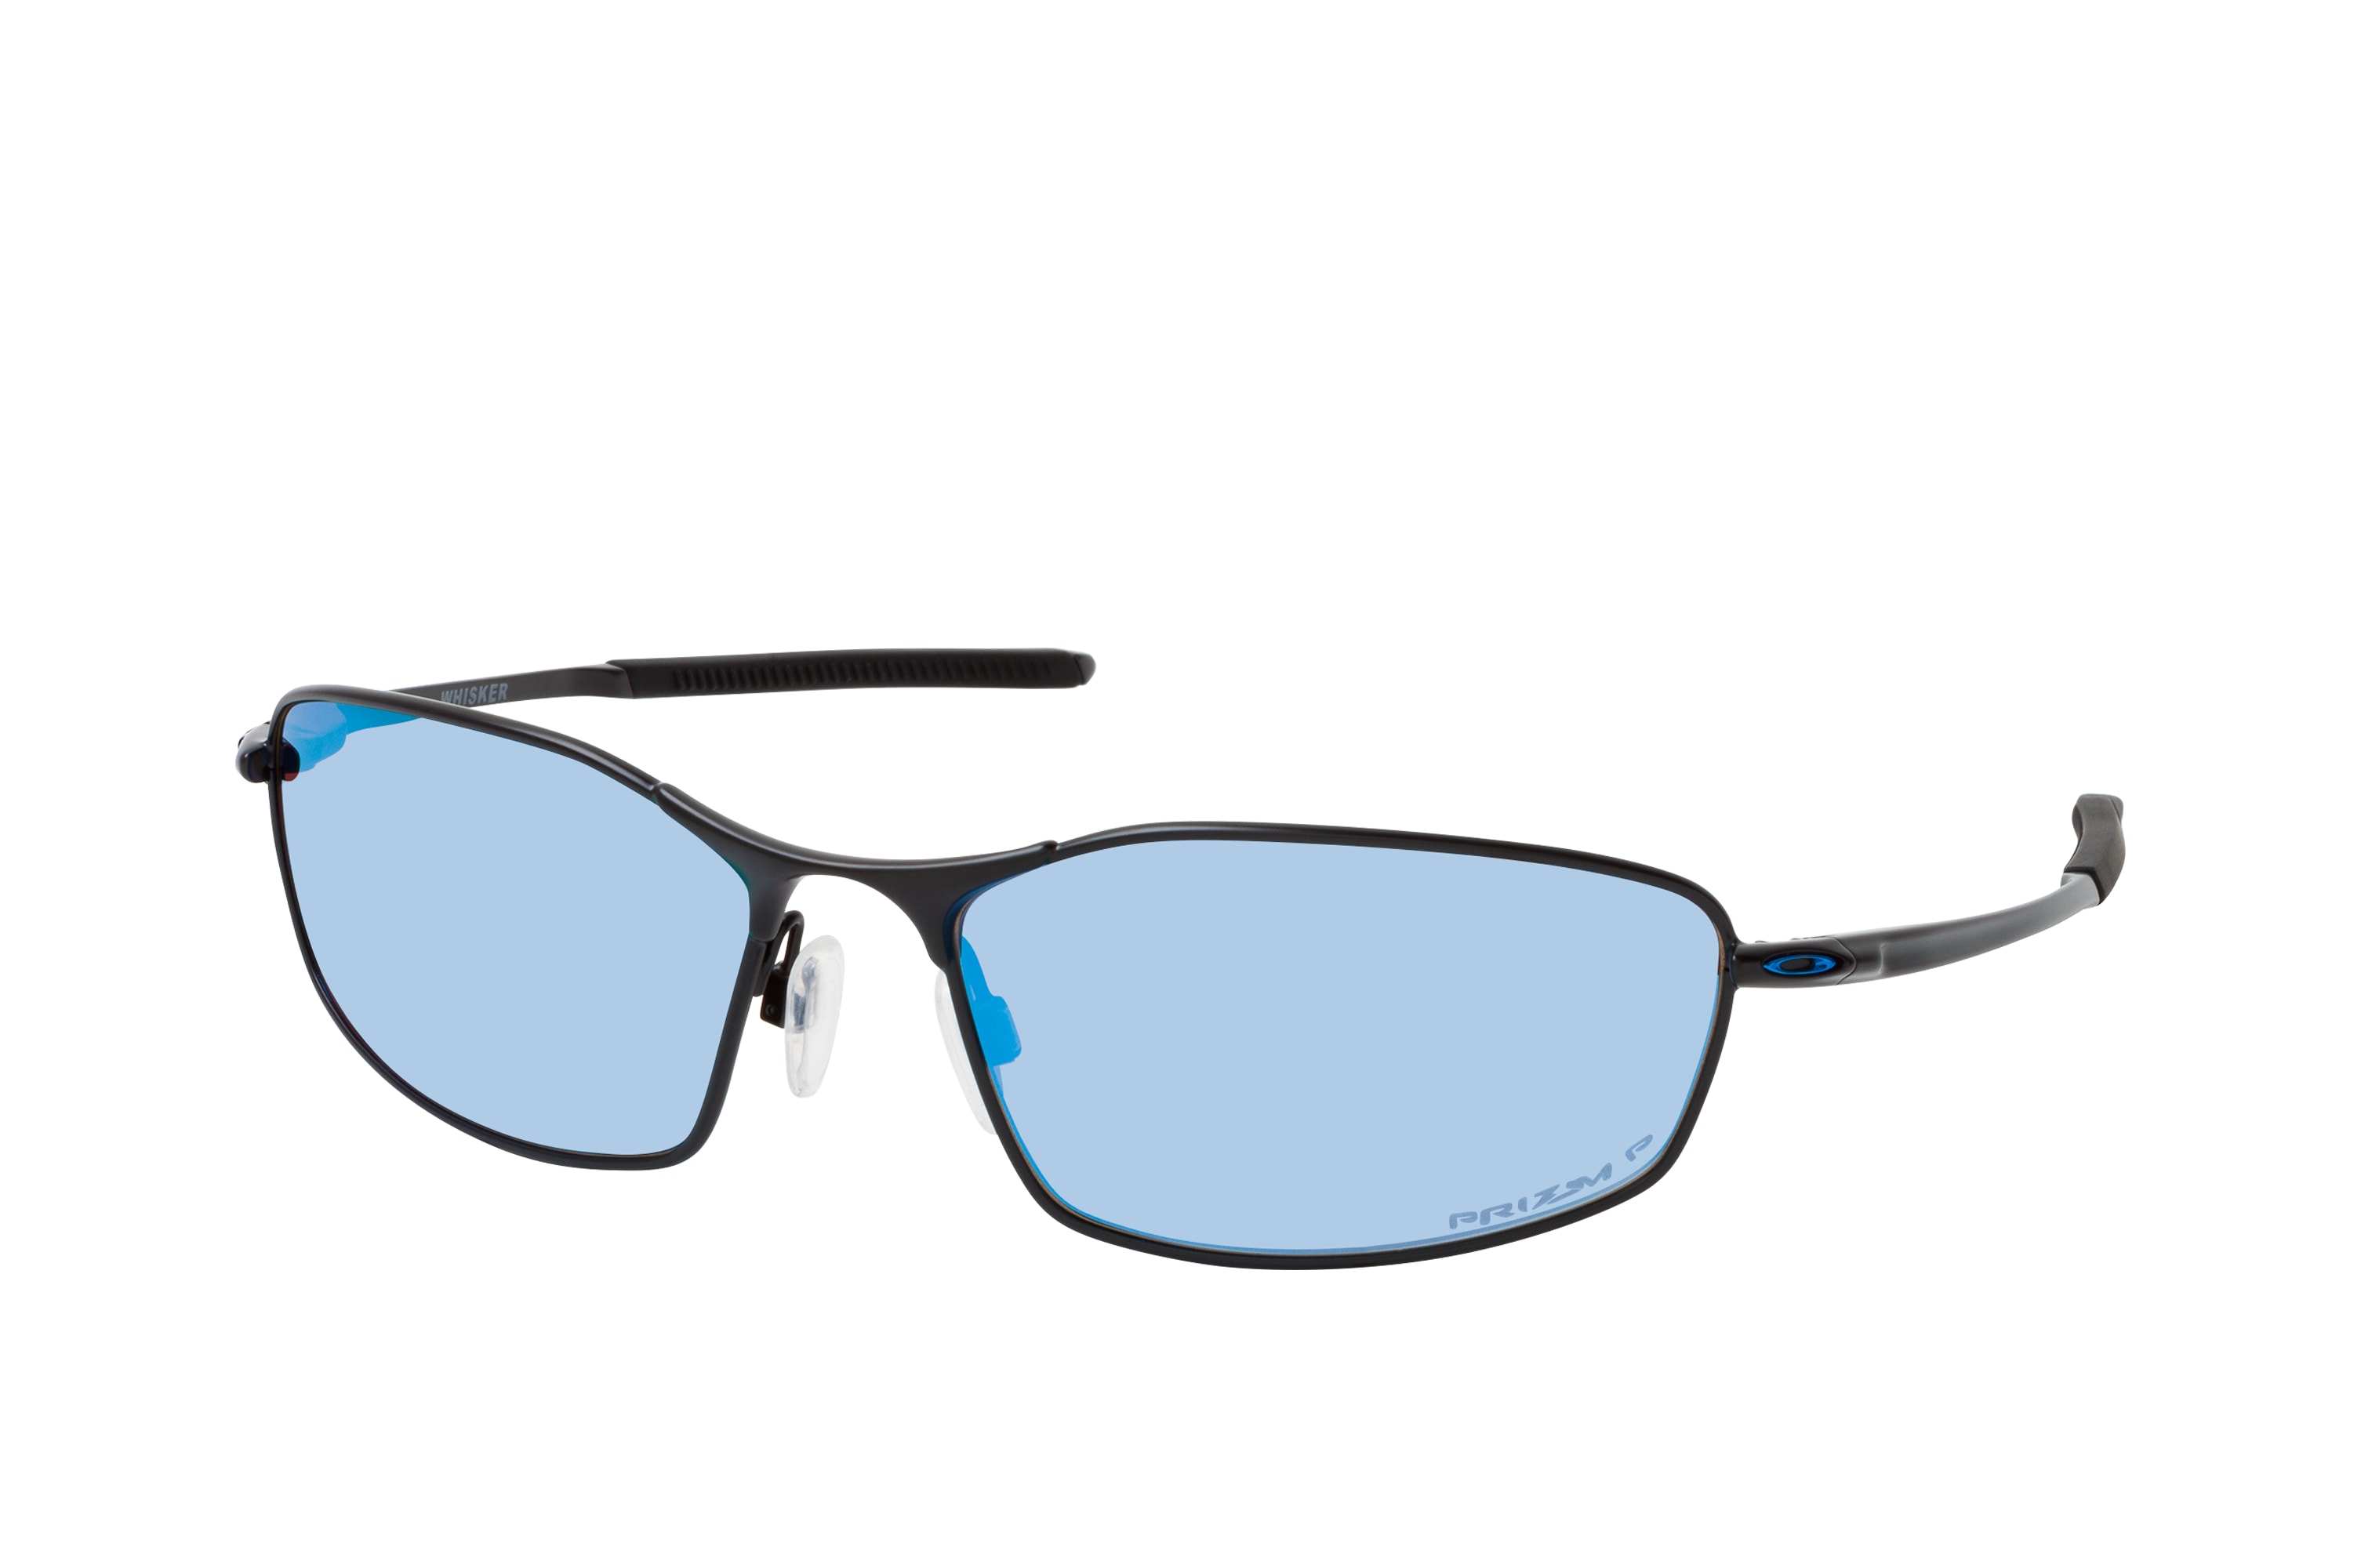 Buy Oakley Whisker OO 4141 11 Sunglasses